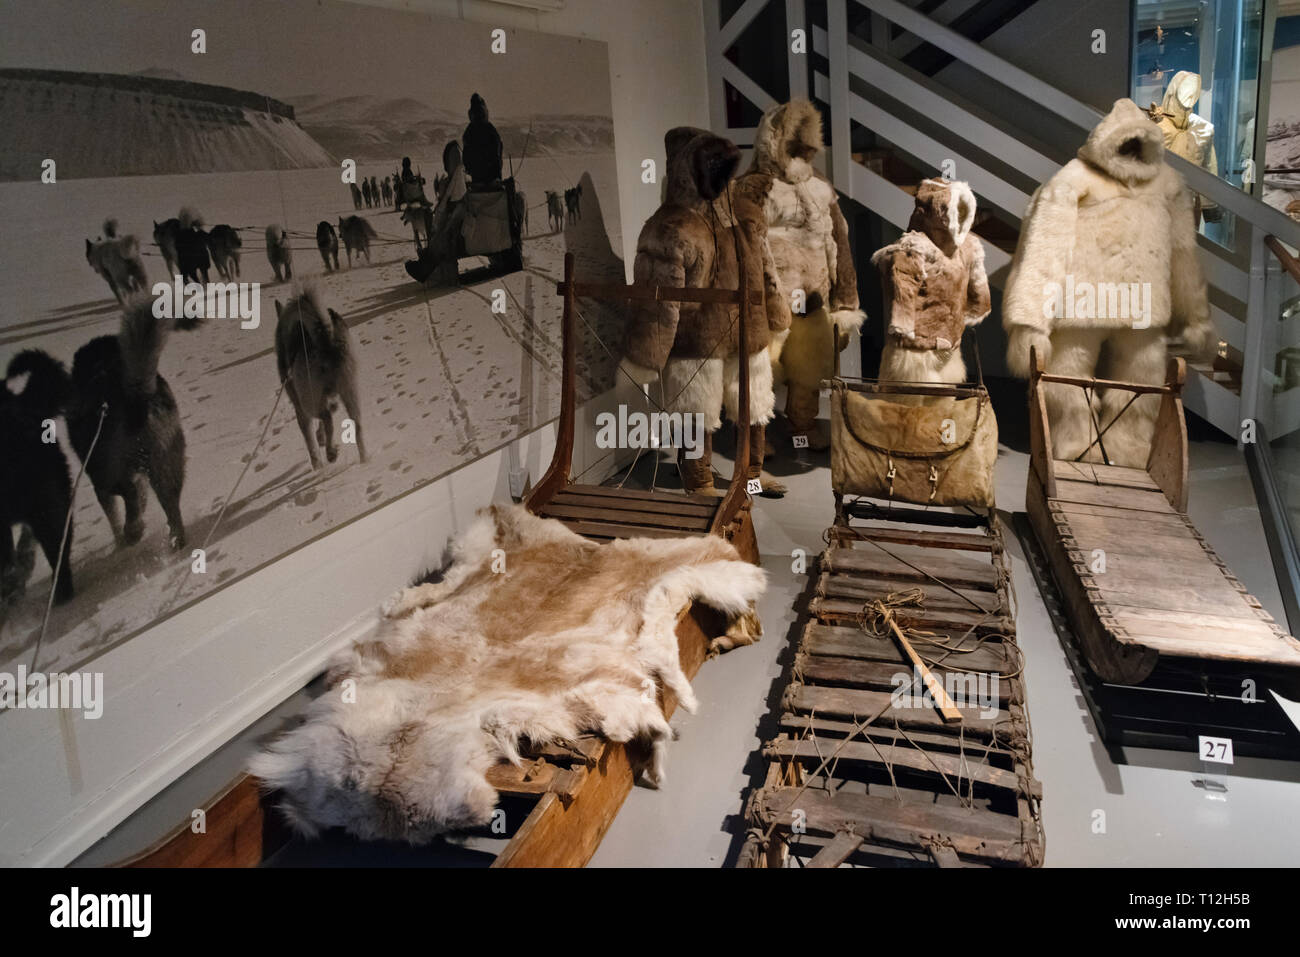 Affichage de vêtements au début de la vie du peuple inuit au Musée National, Nuuk, Groenland Banque D'Images